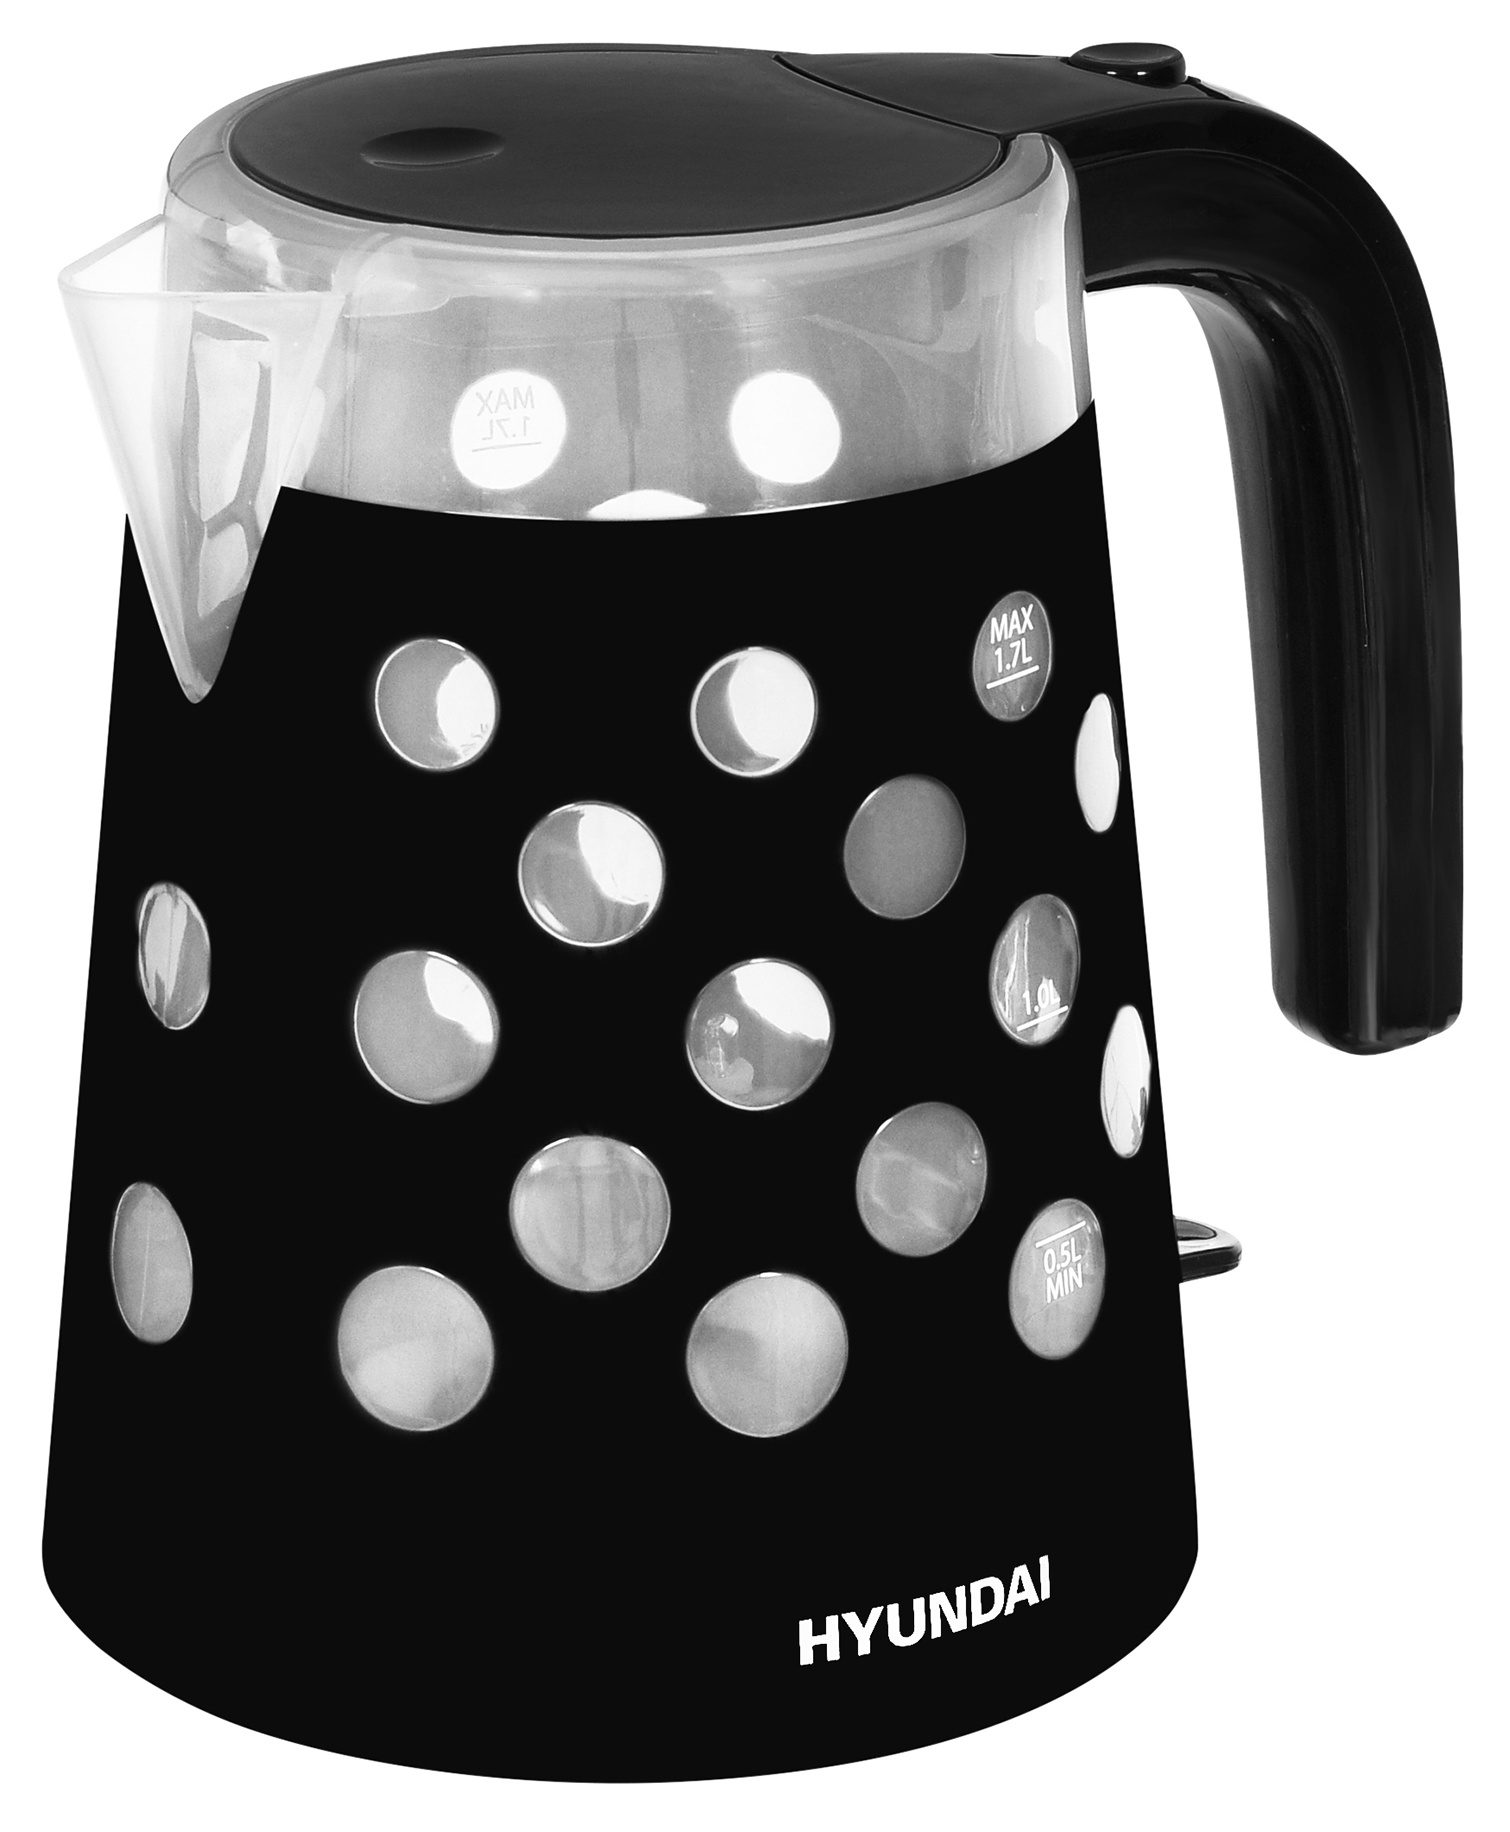 Чайник электрический HYUNDAI HYK-G2012 1.7 л прозрачный, черный чайник электрический hyundai hyk g2012 1 7 л transparent black